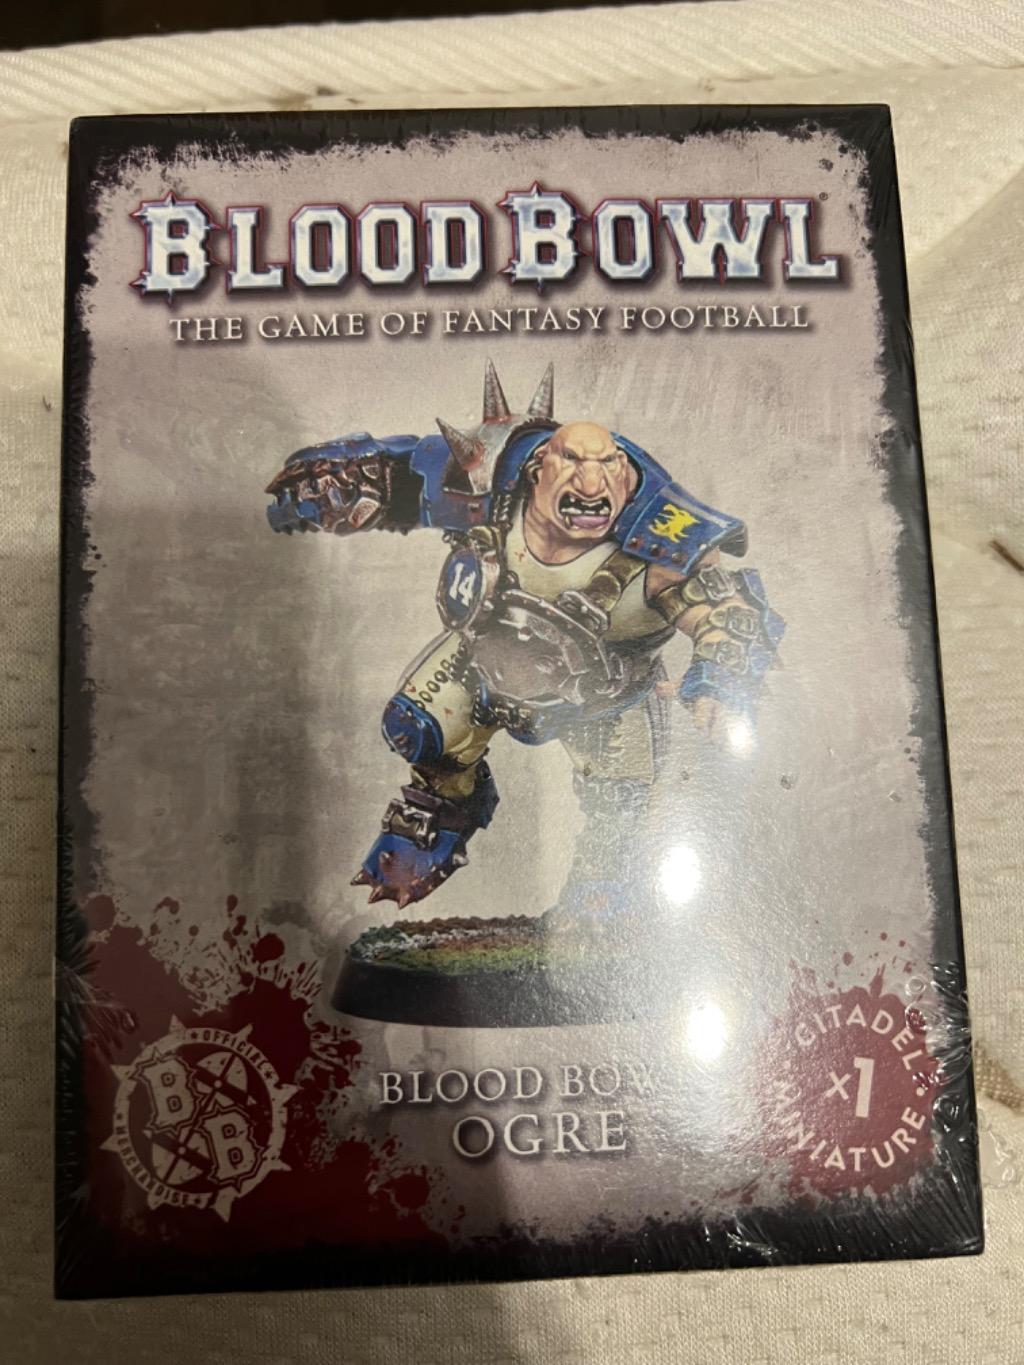 Blood Bowl 2016 - Bloodbowl: Ogre